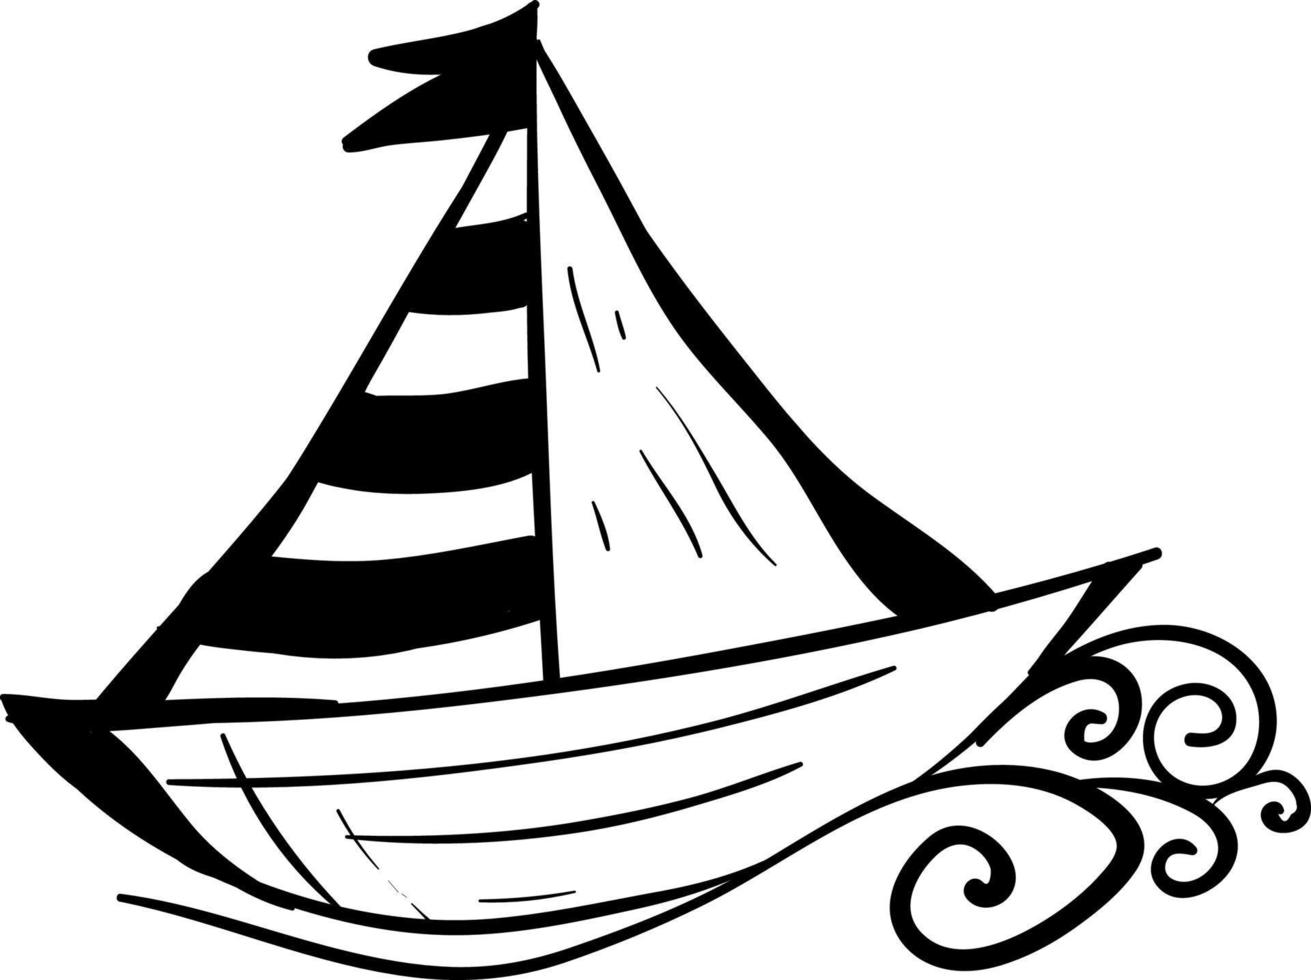 bateau noir et blanc, illustration, vecteur sur fond blanc.